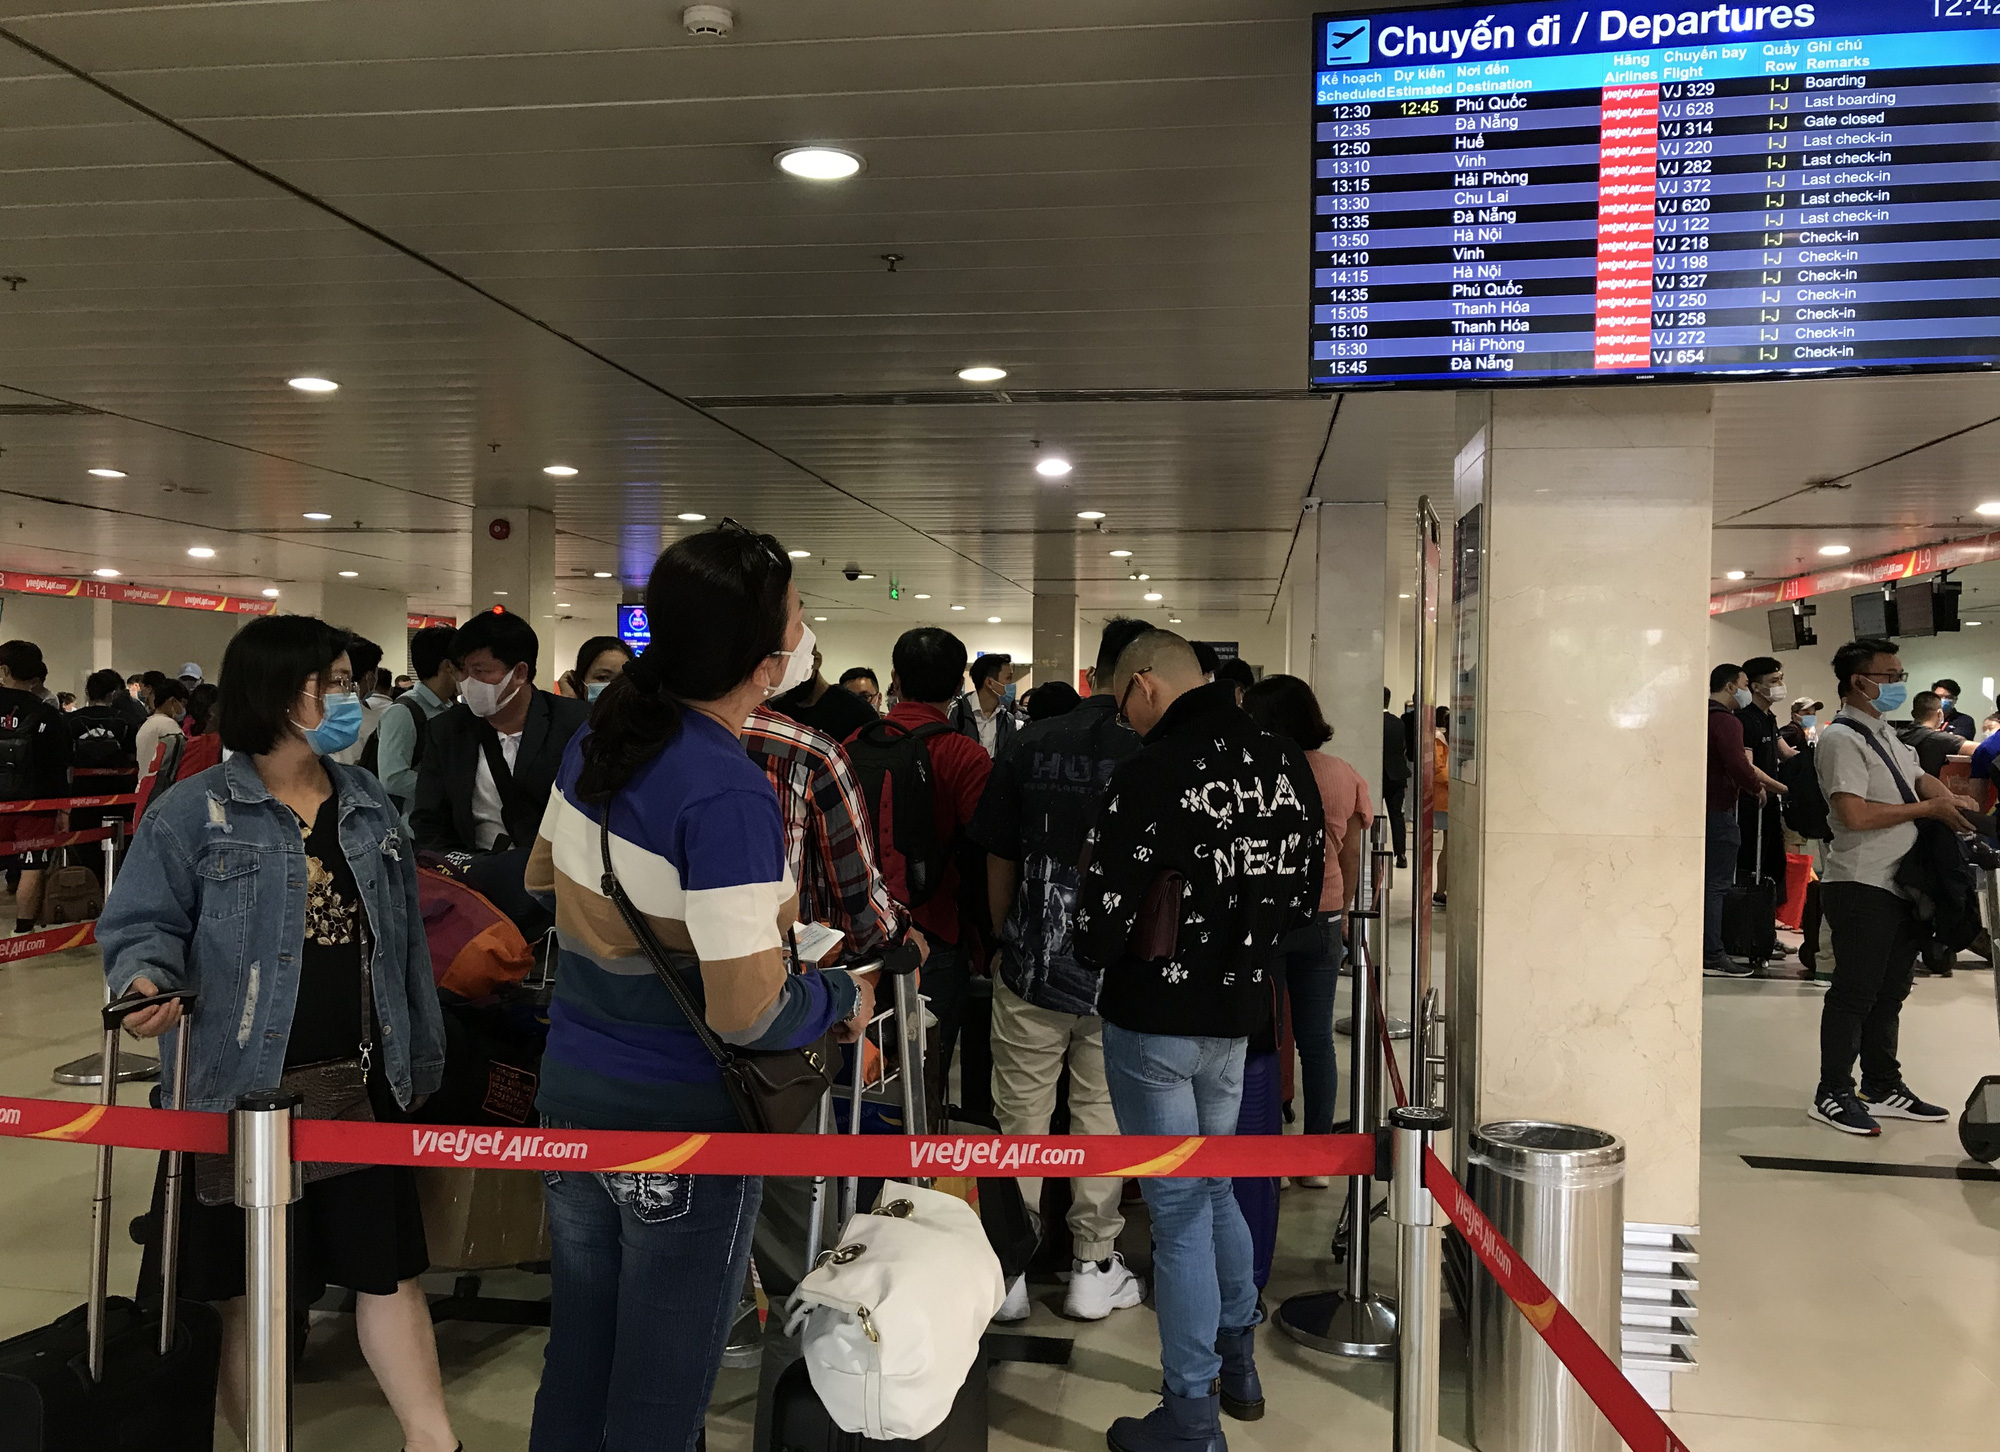 Người dân bắt đầu đổ về quê, sân bay Tân Sơn Nhất đông nghẹt, xếp hàng hơn nửa tiếng chờ check-in - Ảnh 8.